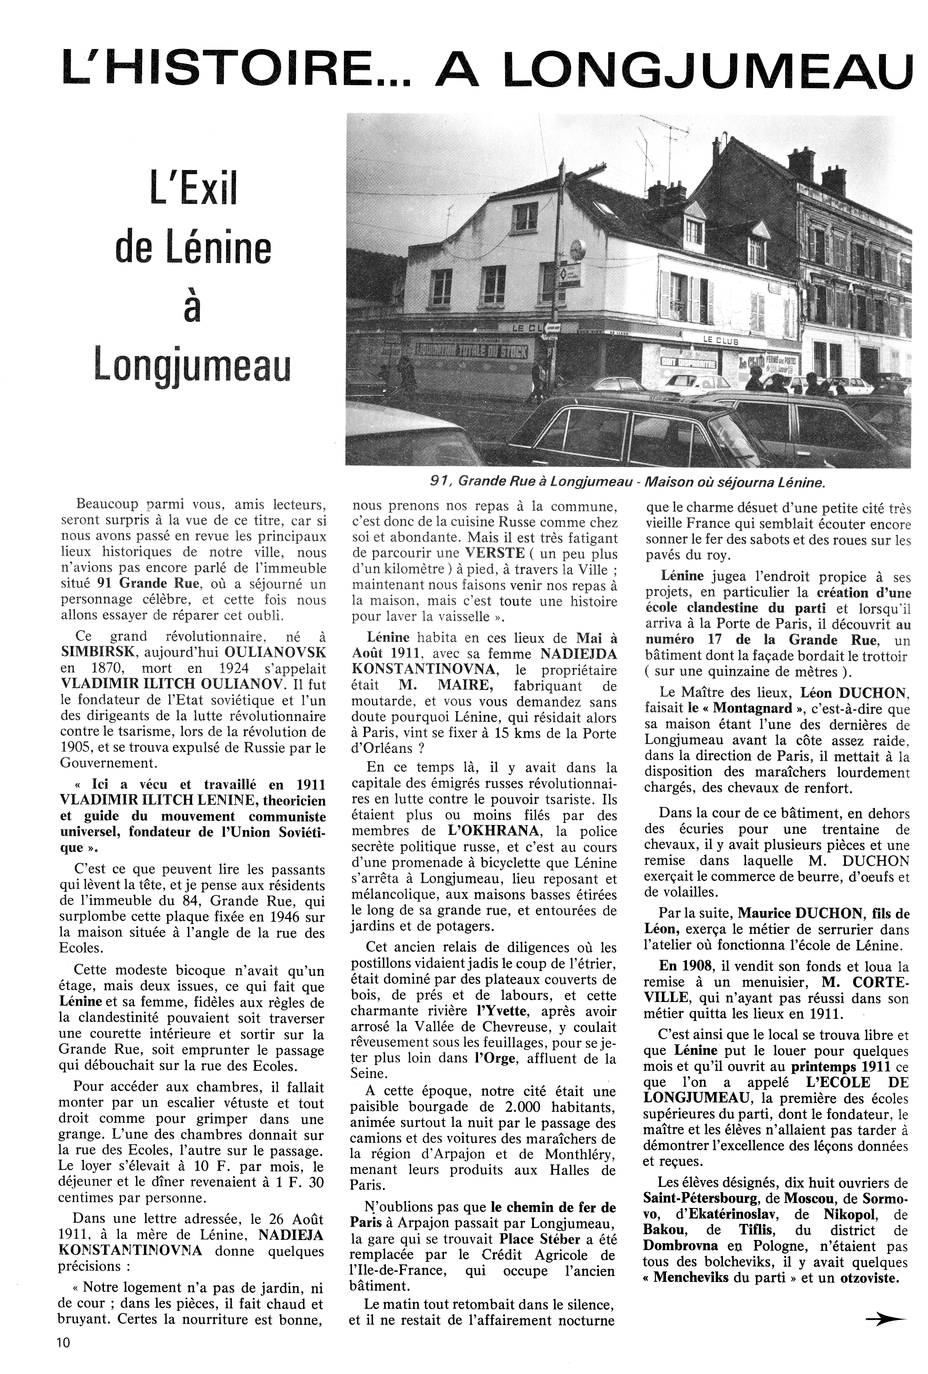 L'exil de Lénine à Longjumeau, page 1